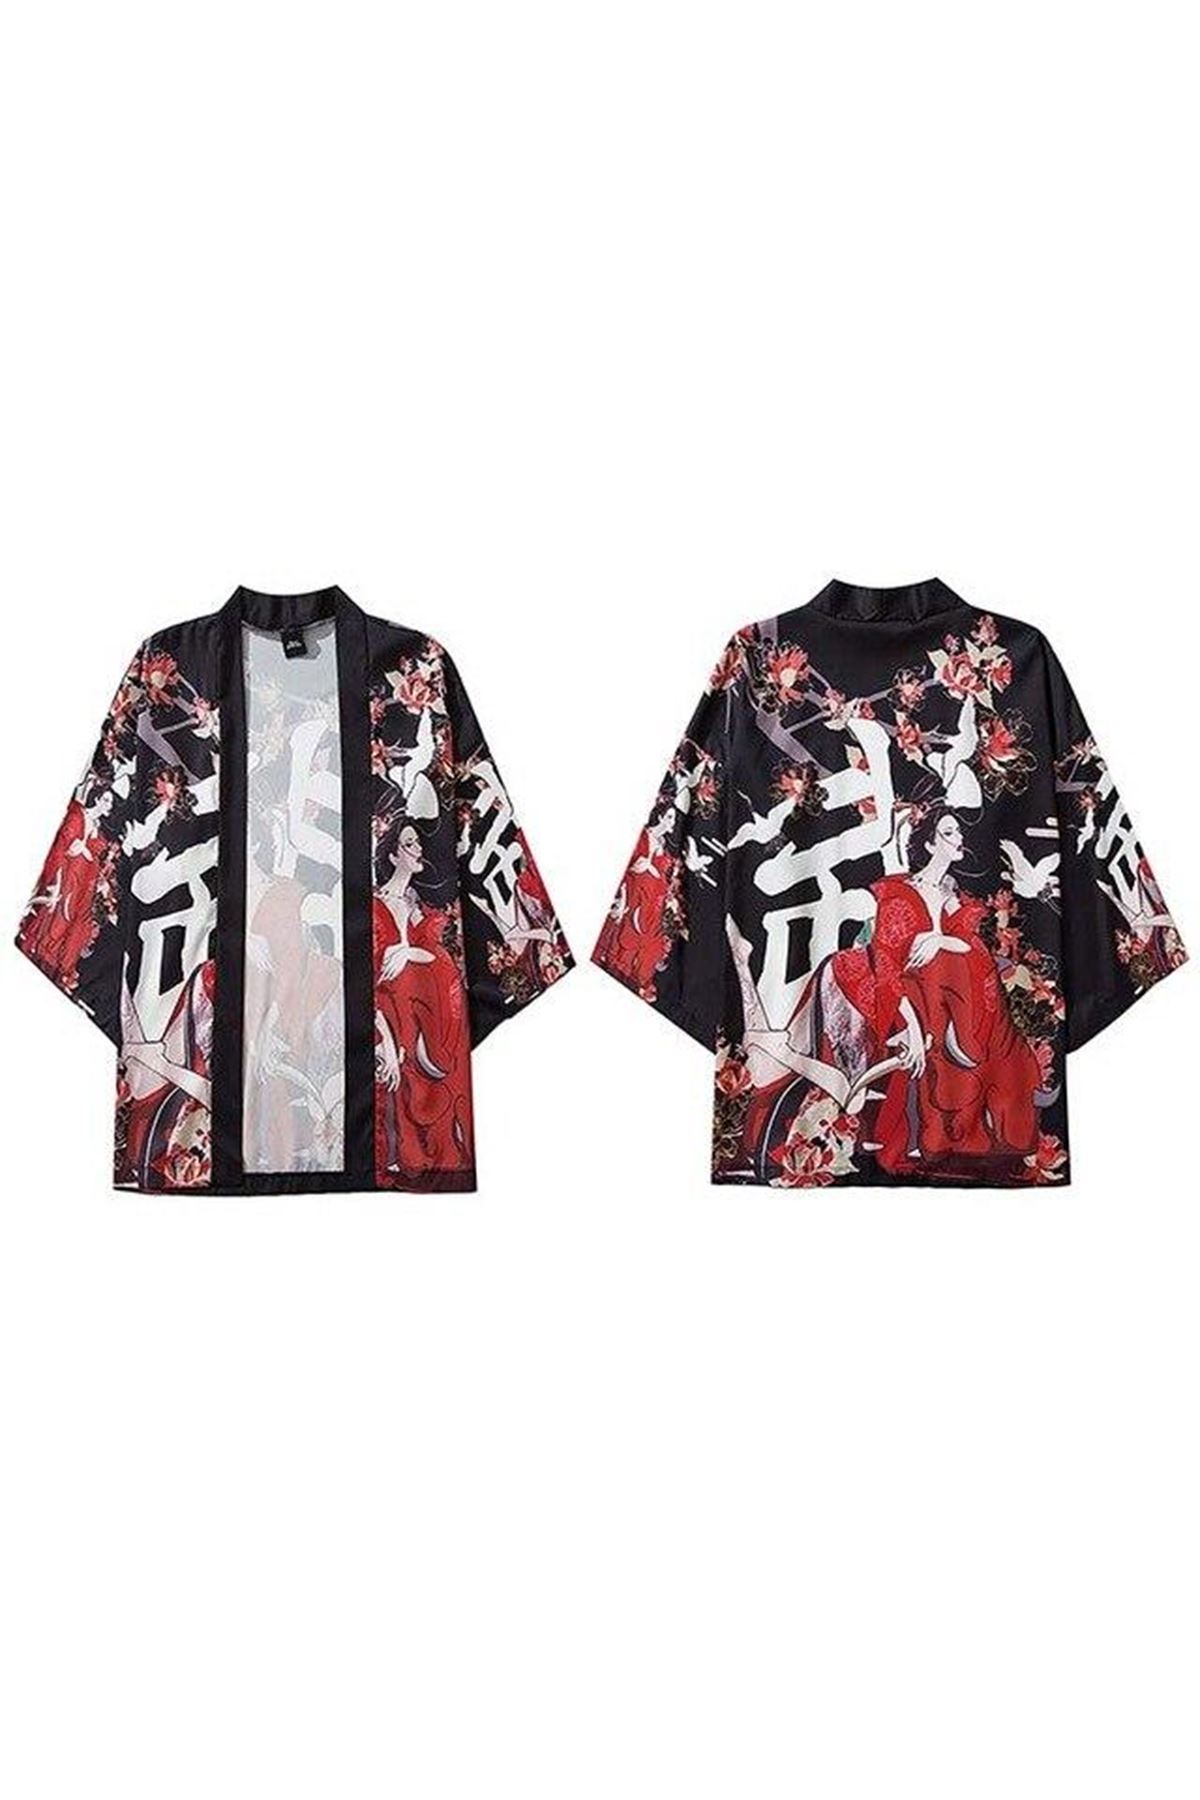 Japon Kadın/Erkek/Unisex/Oversize Siyah/Bej/Kırmızı Kimono-Siyah 1017